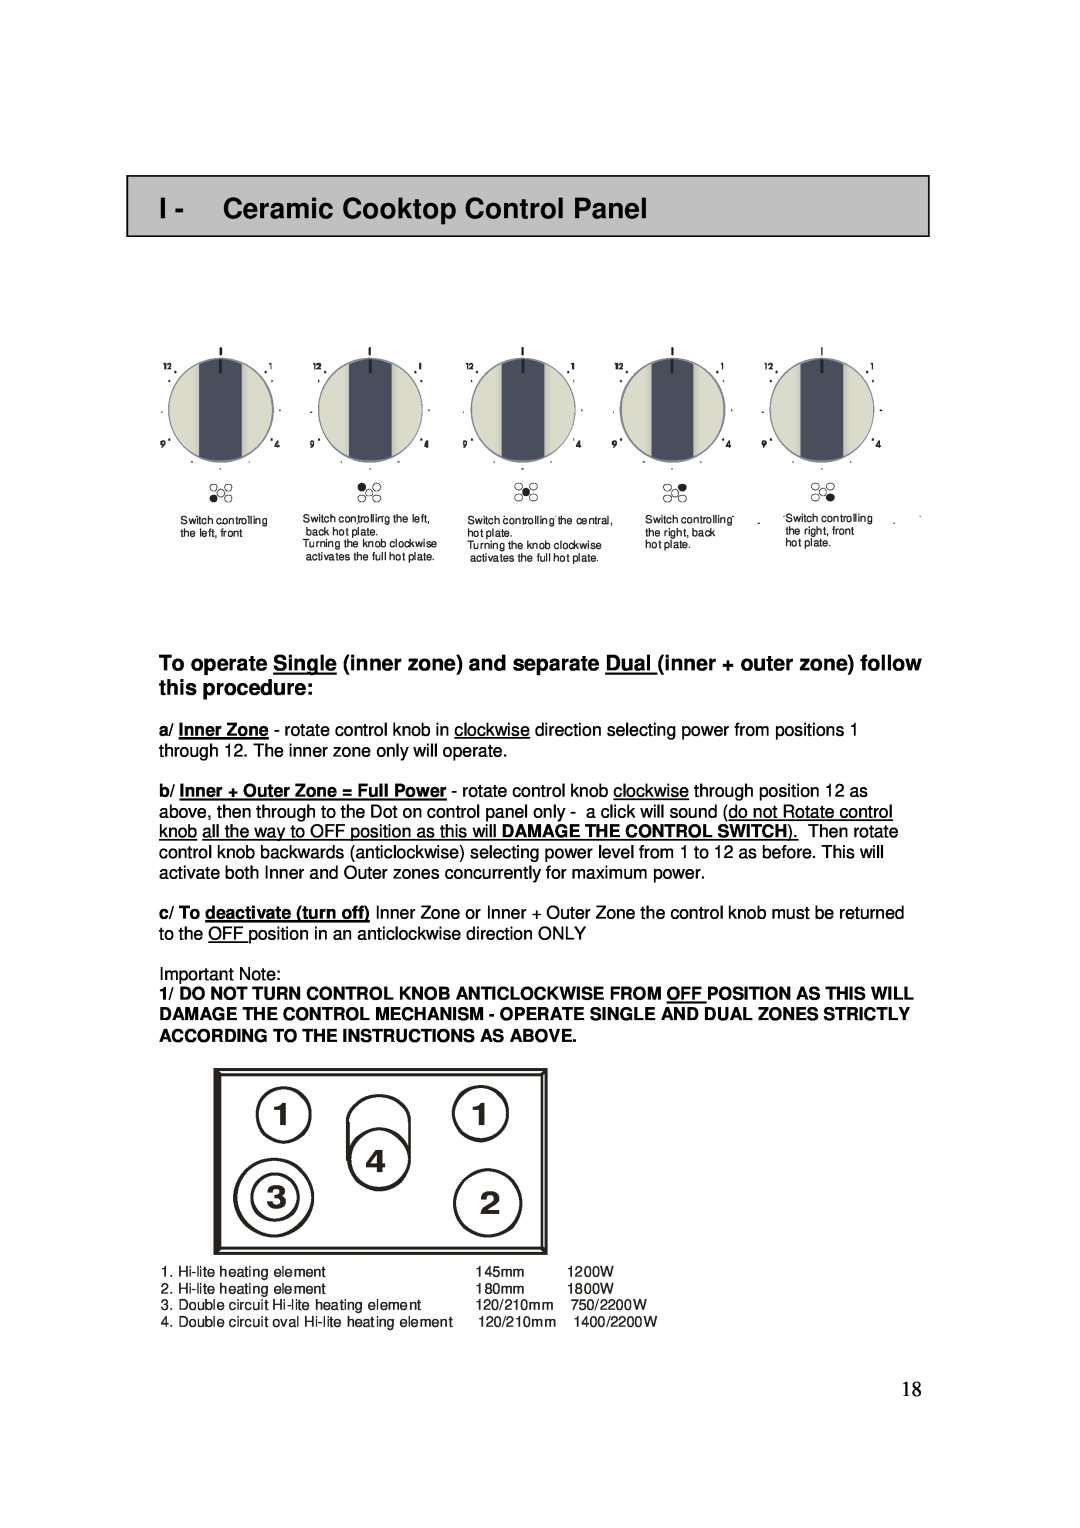 AEG 3009VNMM, 3009VNM-M user manual I - Ceramic Cooktop Control Panel 